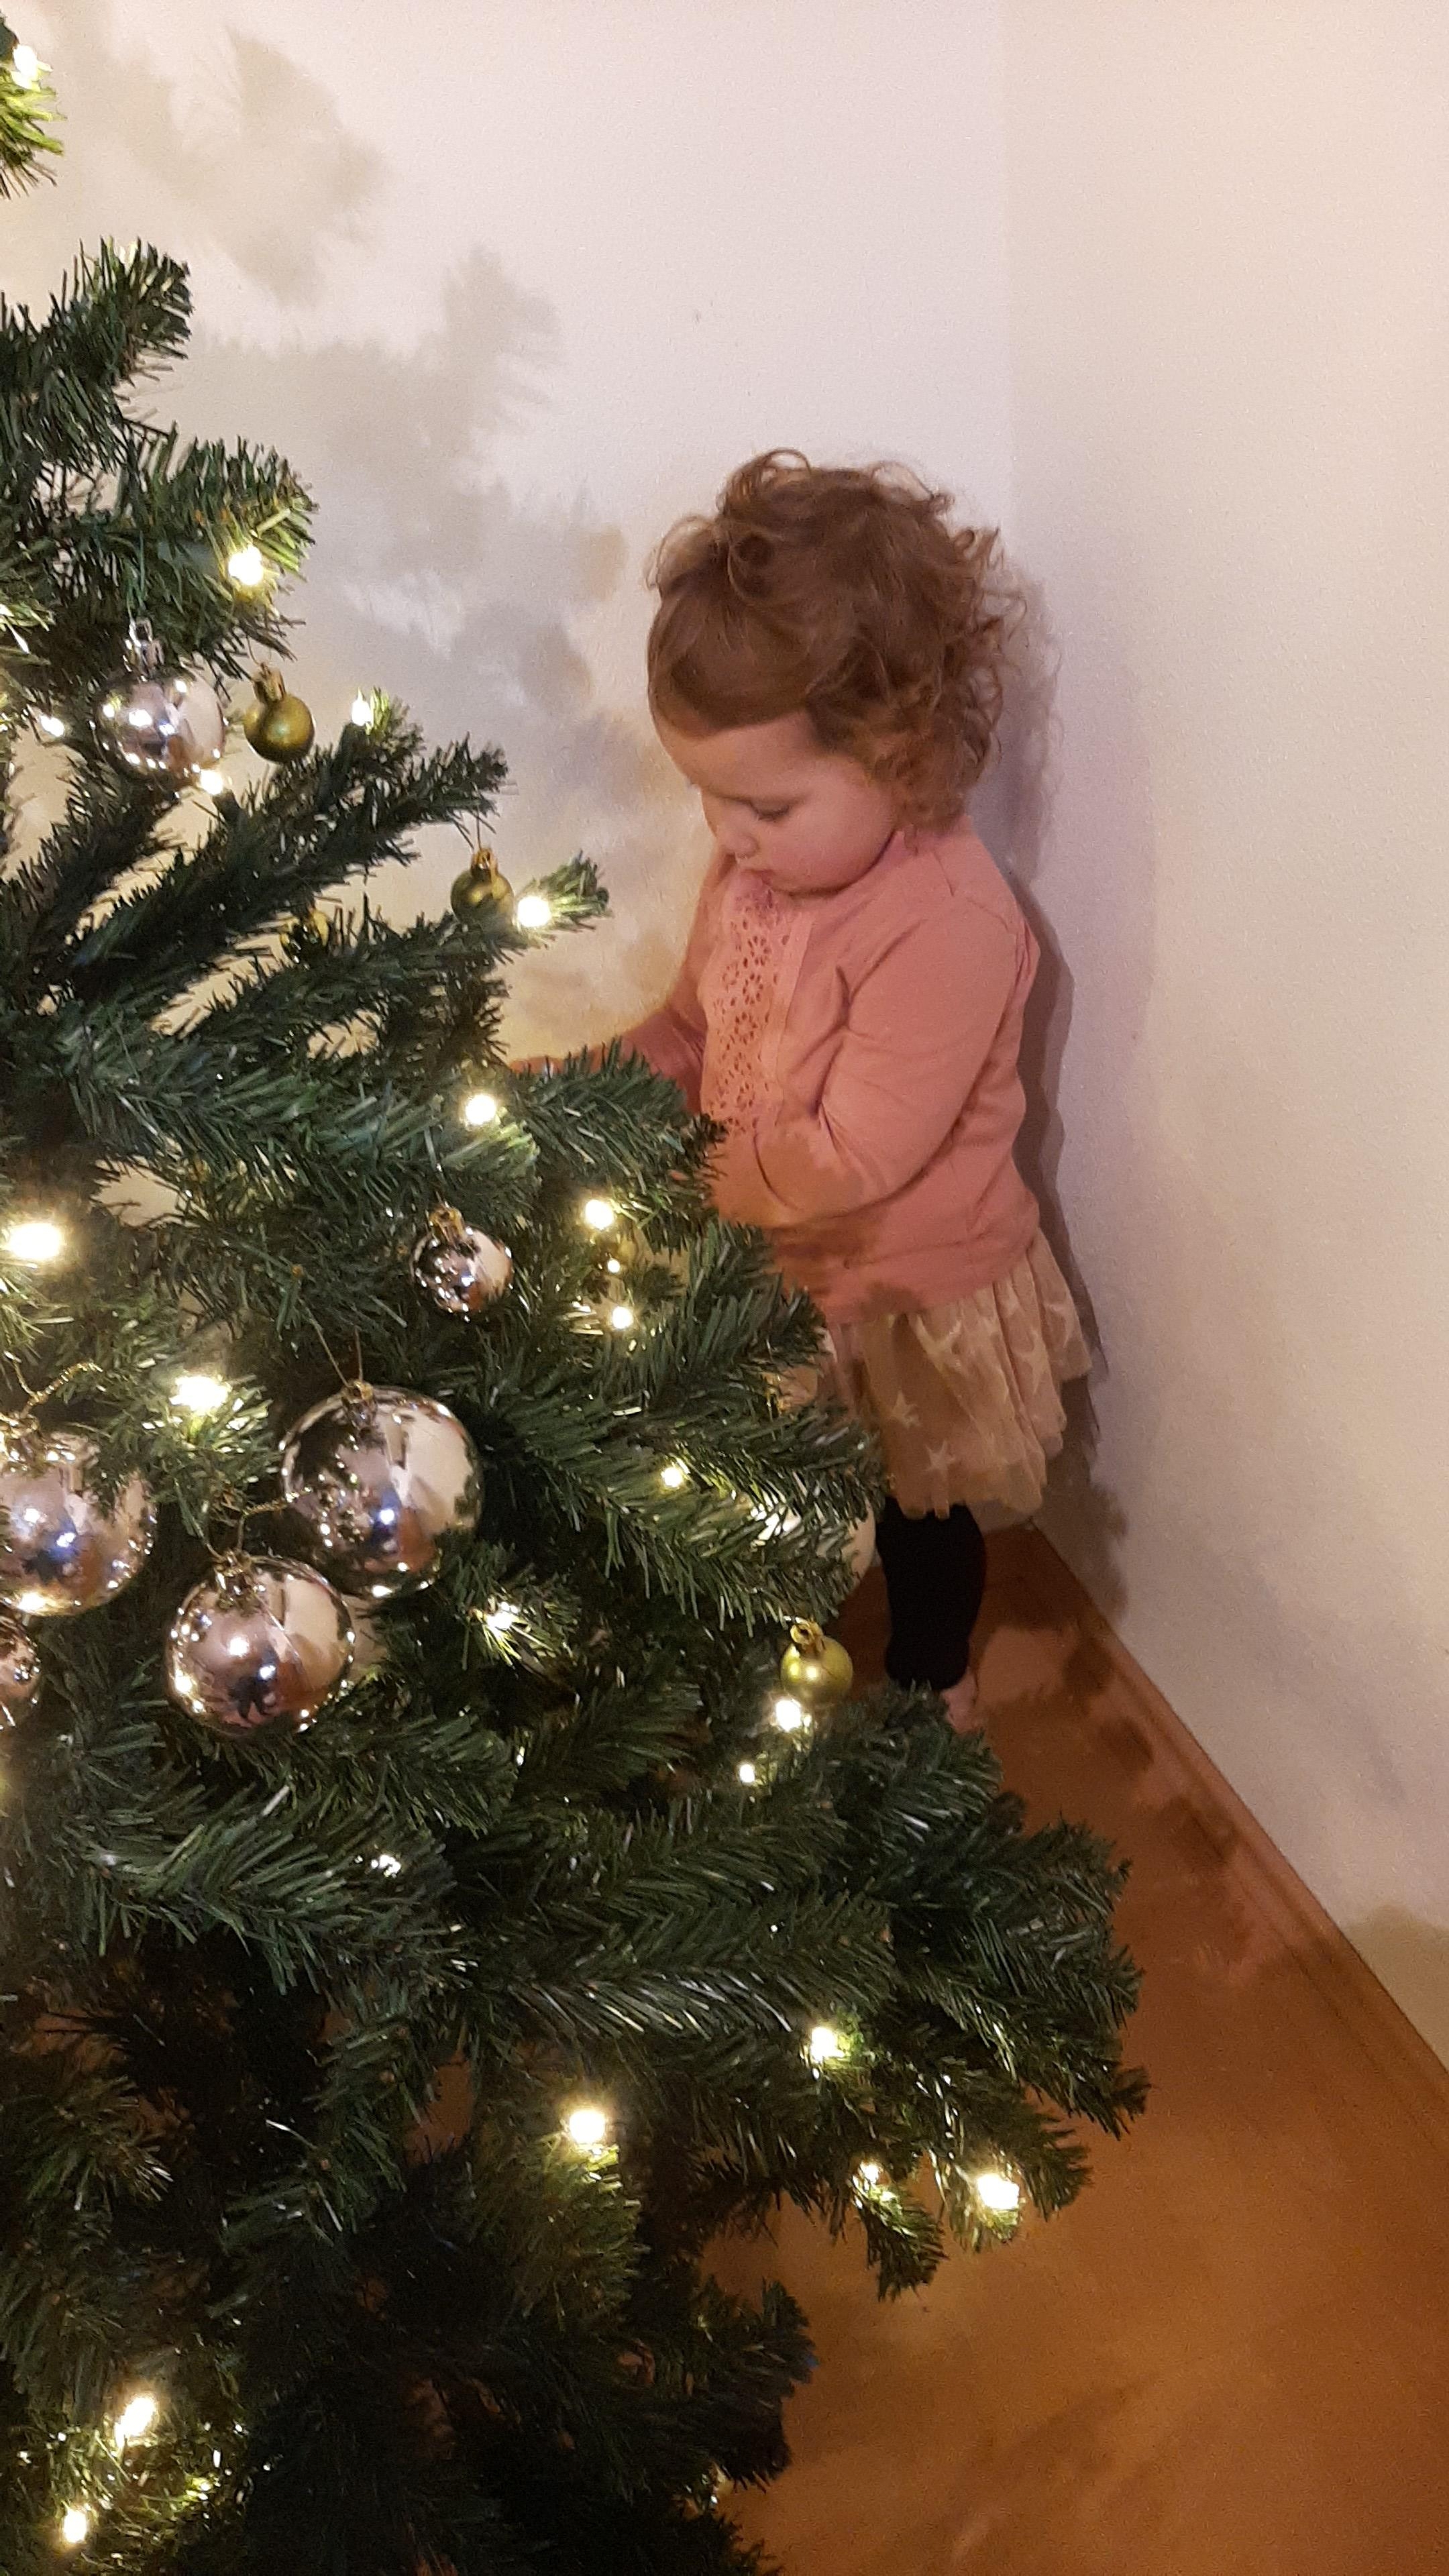 #weihnachtsbaum #christbaum #xmas #heiligabend